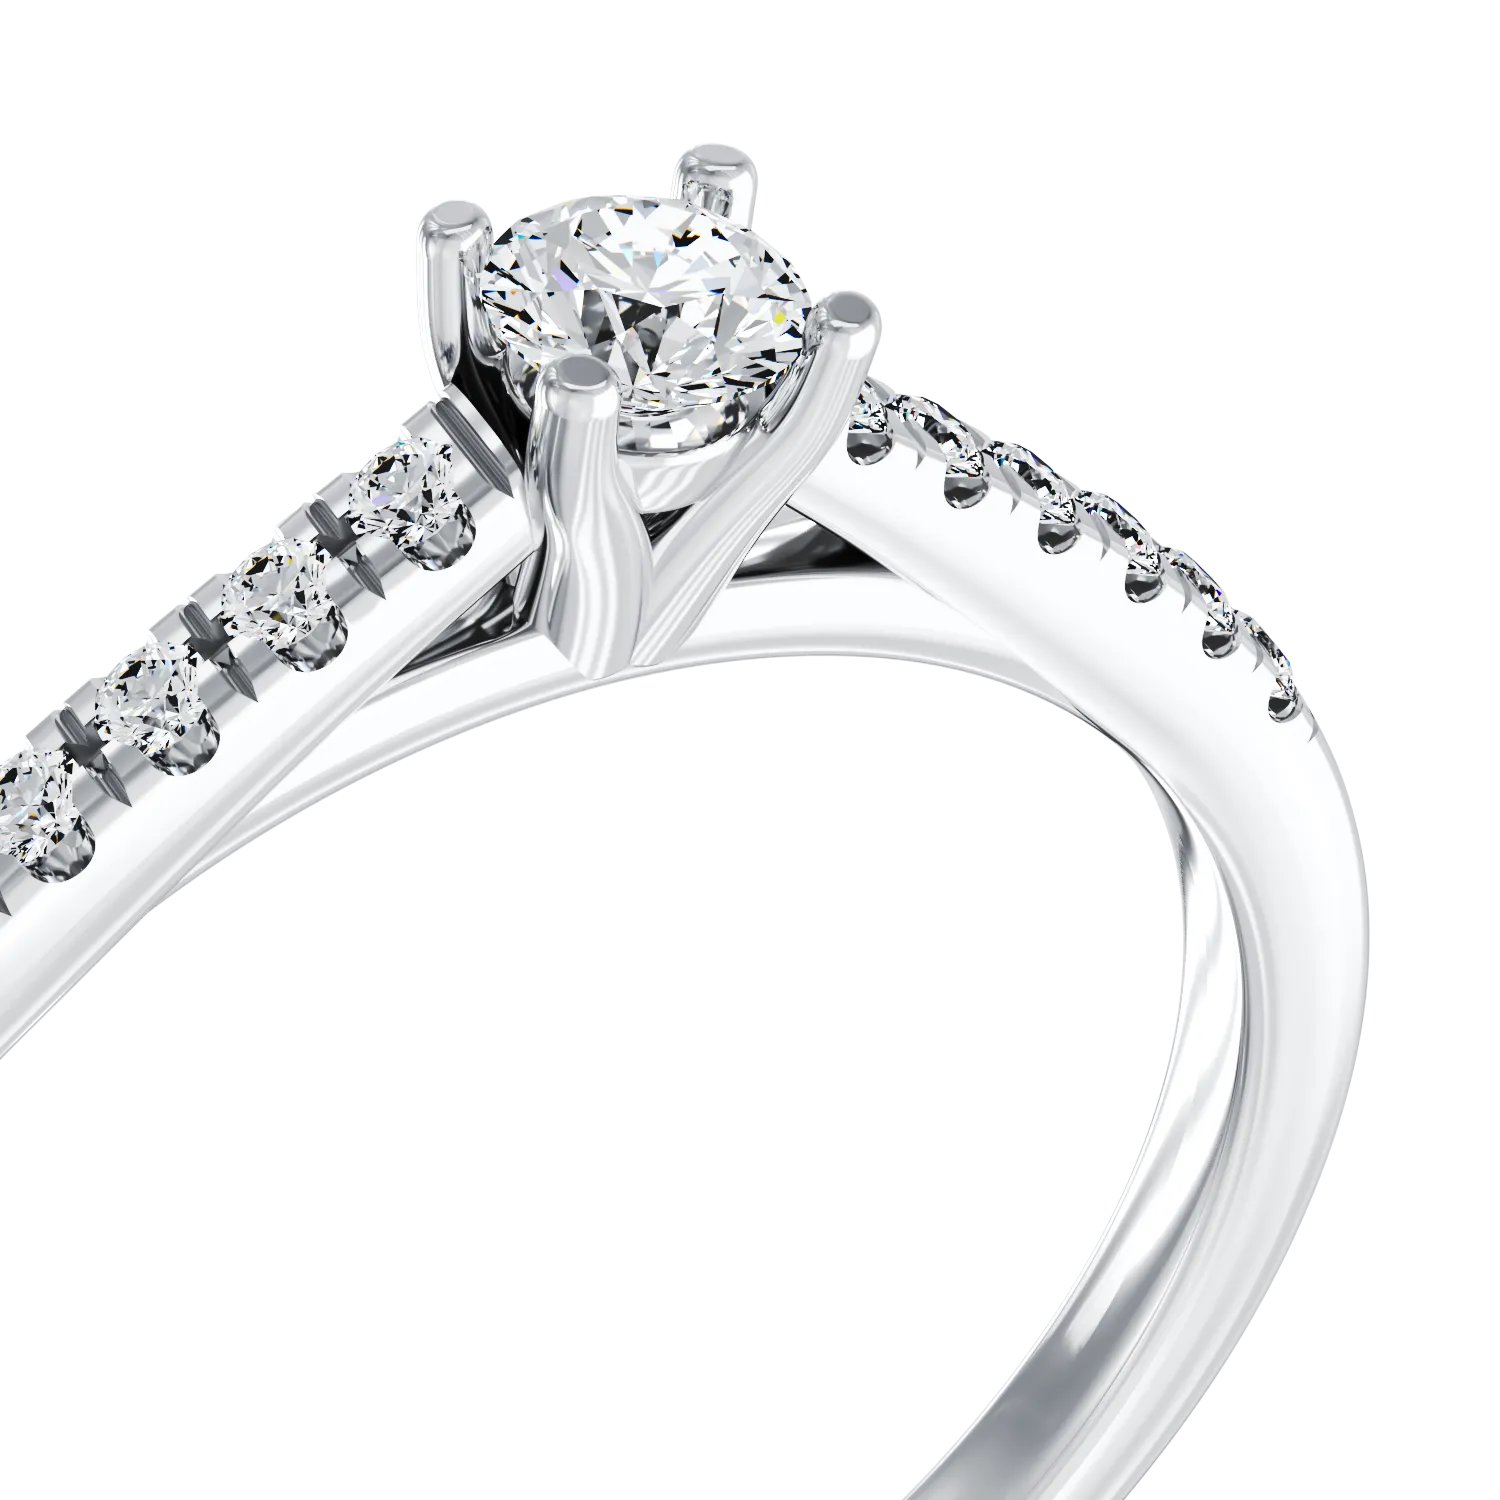 Eljegyzési gyűrű 18K-os fehér aranyból 0,305ct gyémánttal és 0,125ct gyémánttal